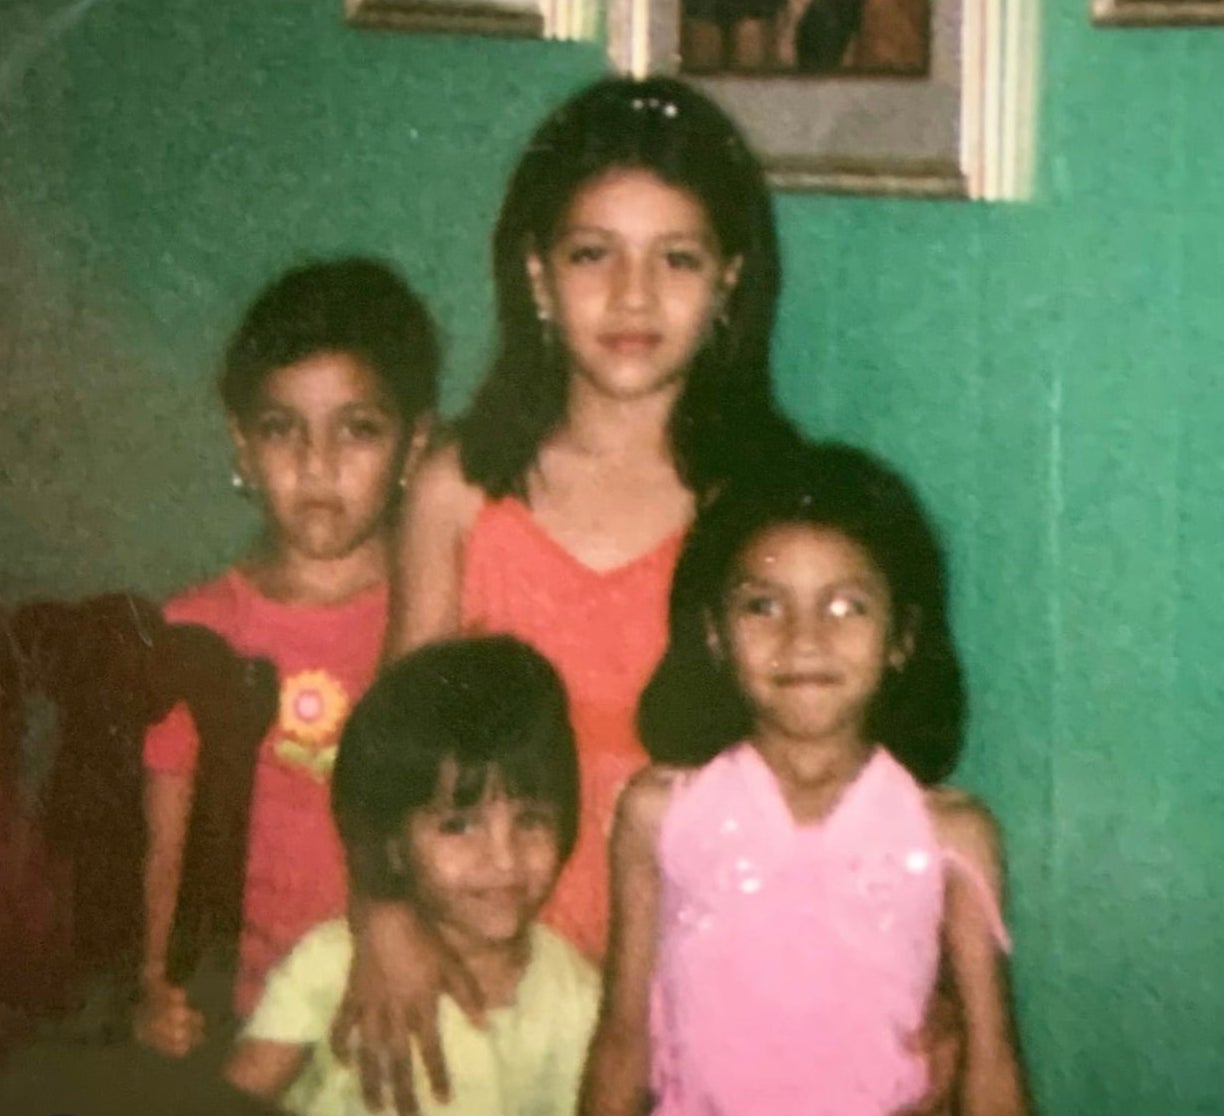 Mayra y Vanessa Guillen, las hermanas mayores, fueron criadas junto a dos hermanas y dos hermanos más en Houston por padres inmigrantes mexicanos